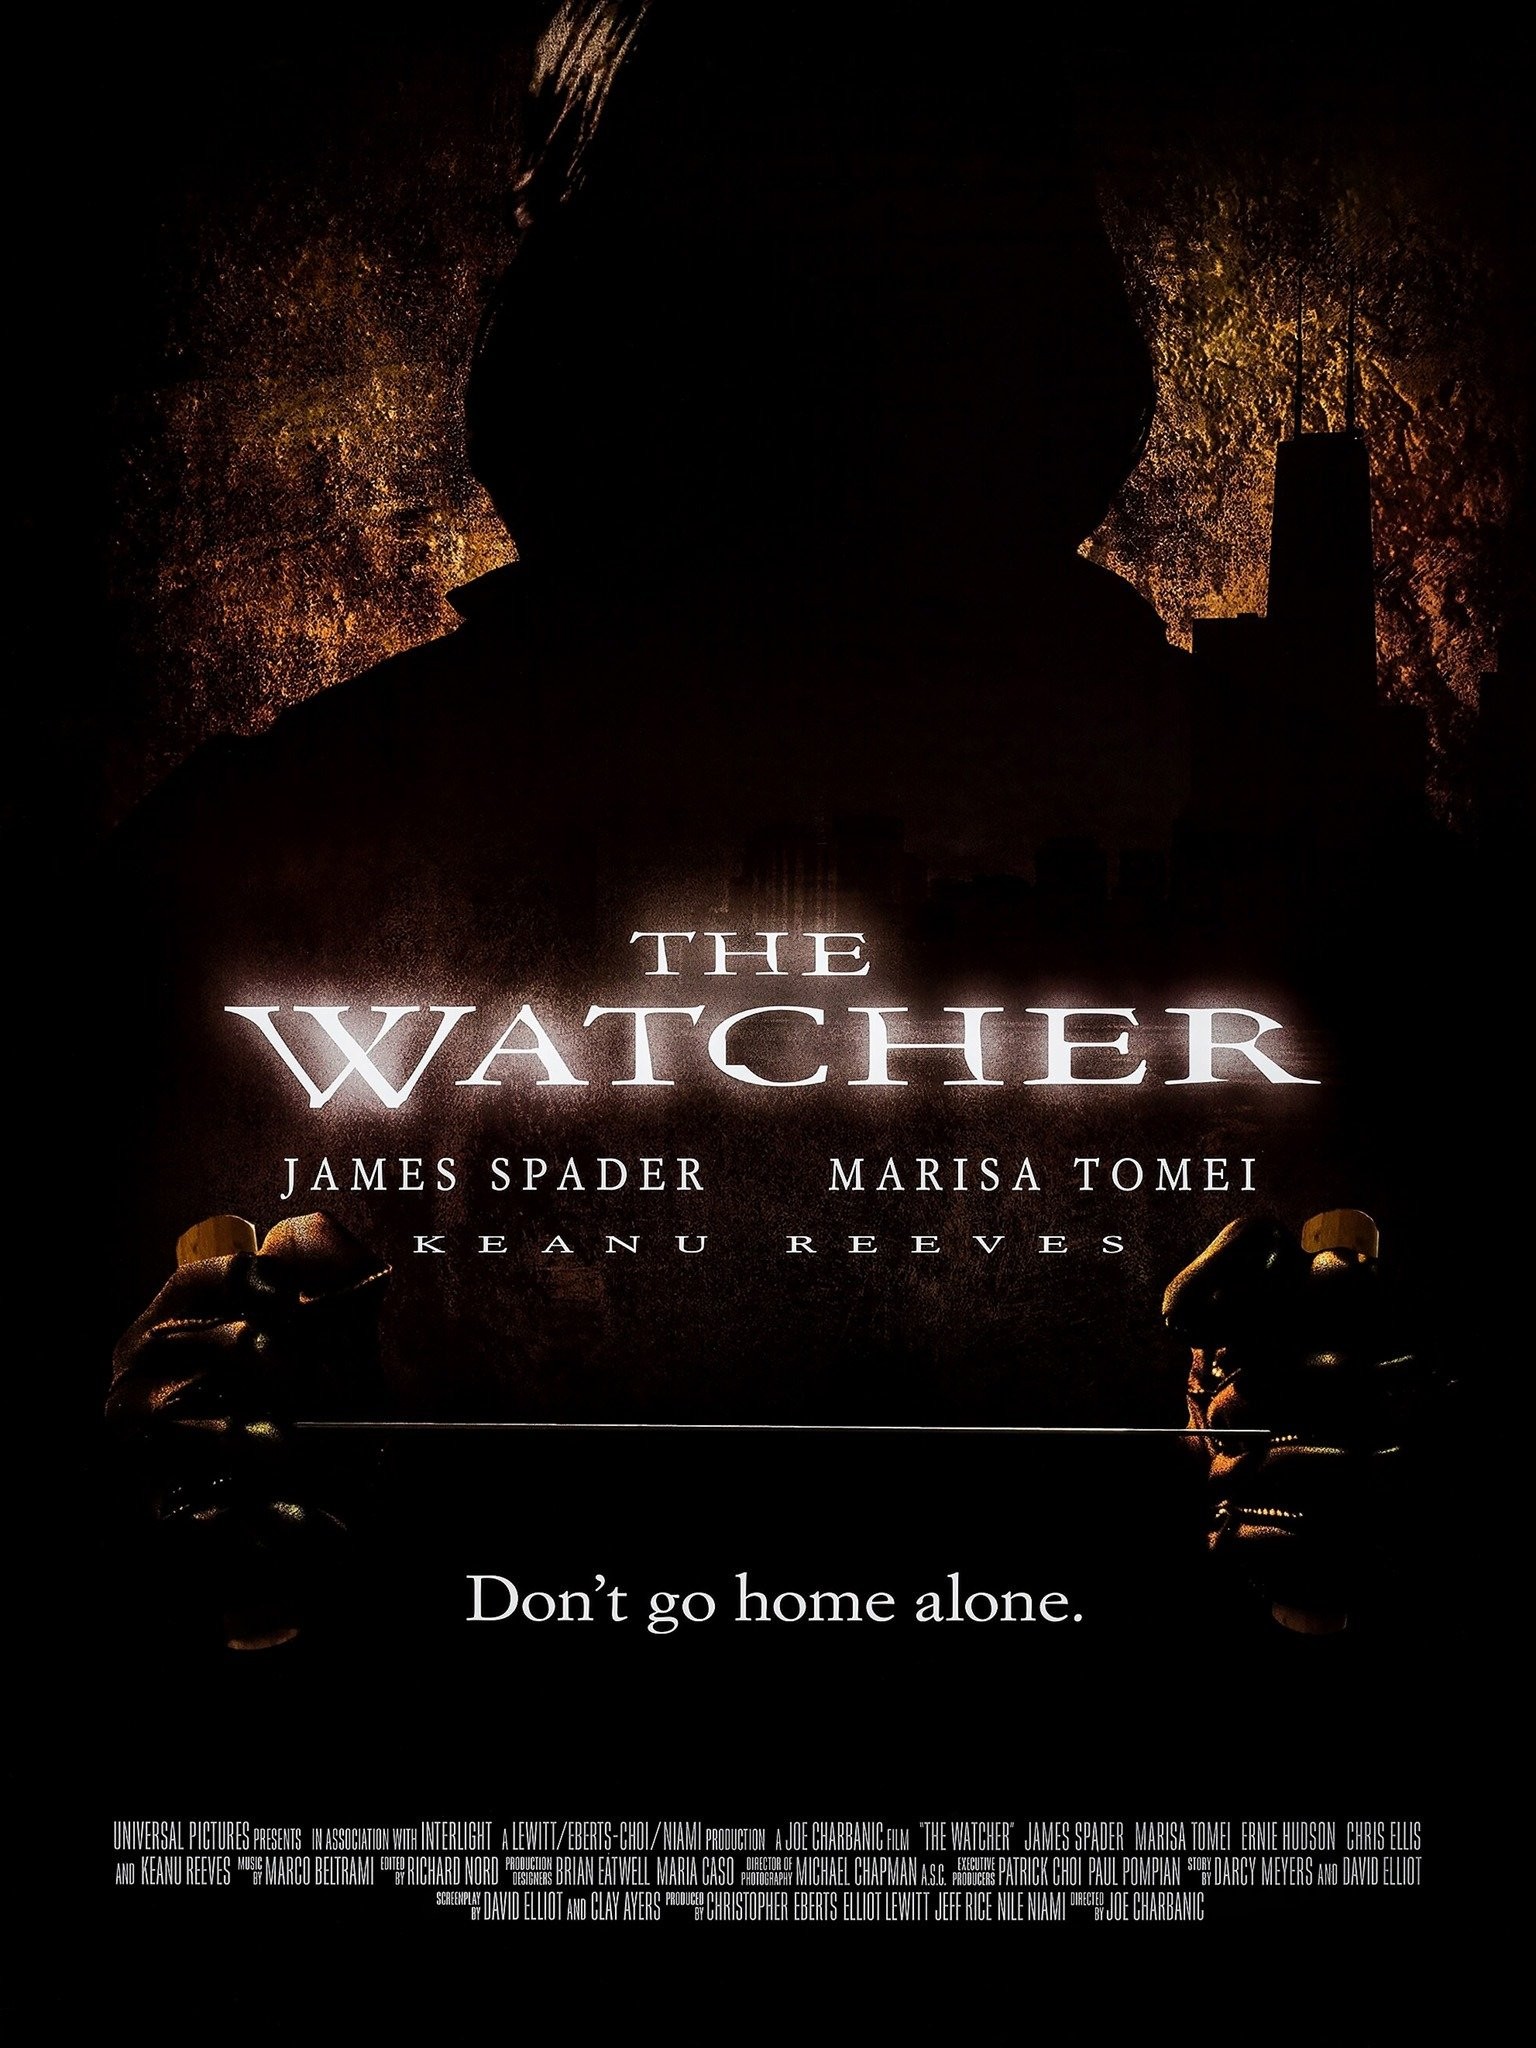 The Watcher: Cast, Trailer, Plot